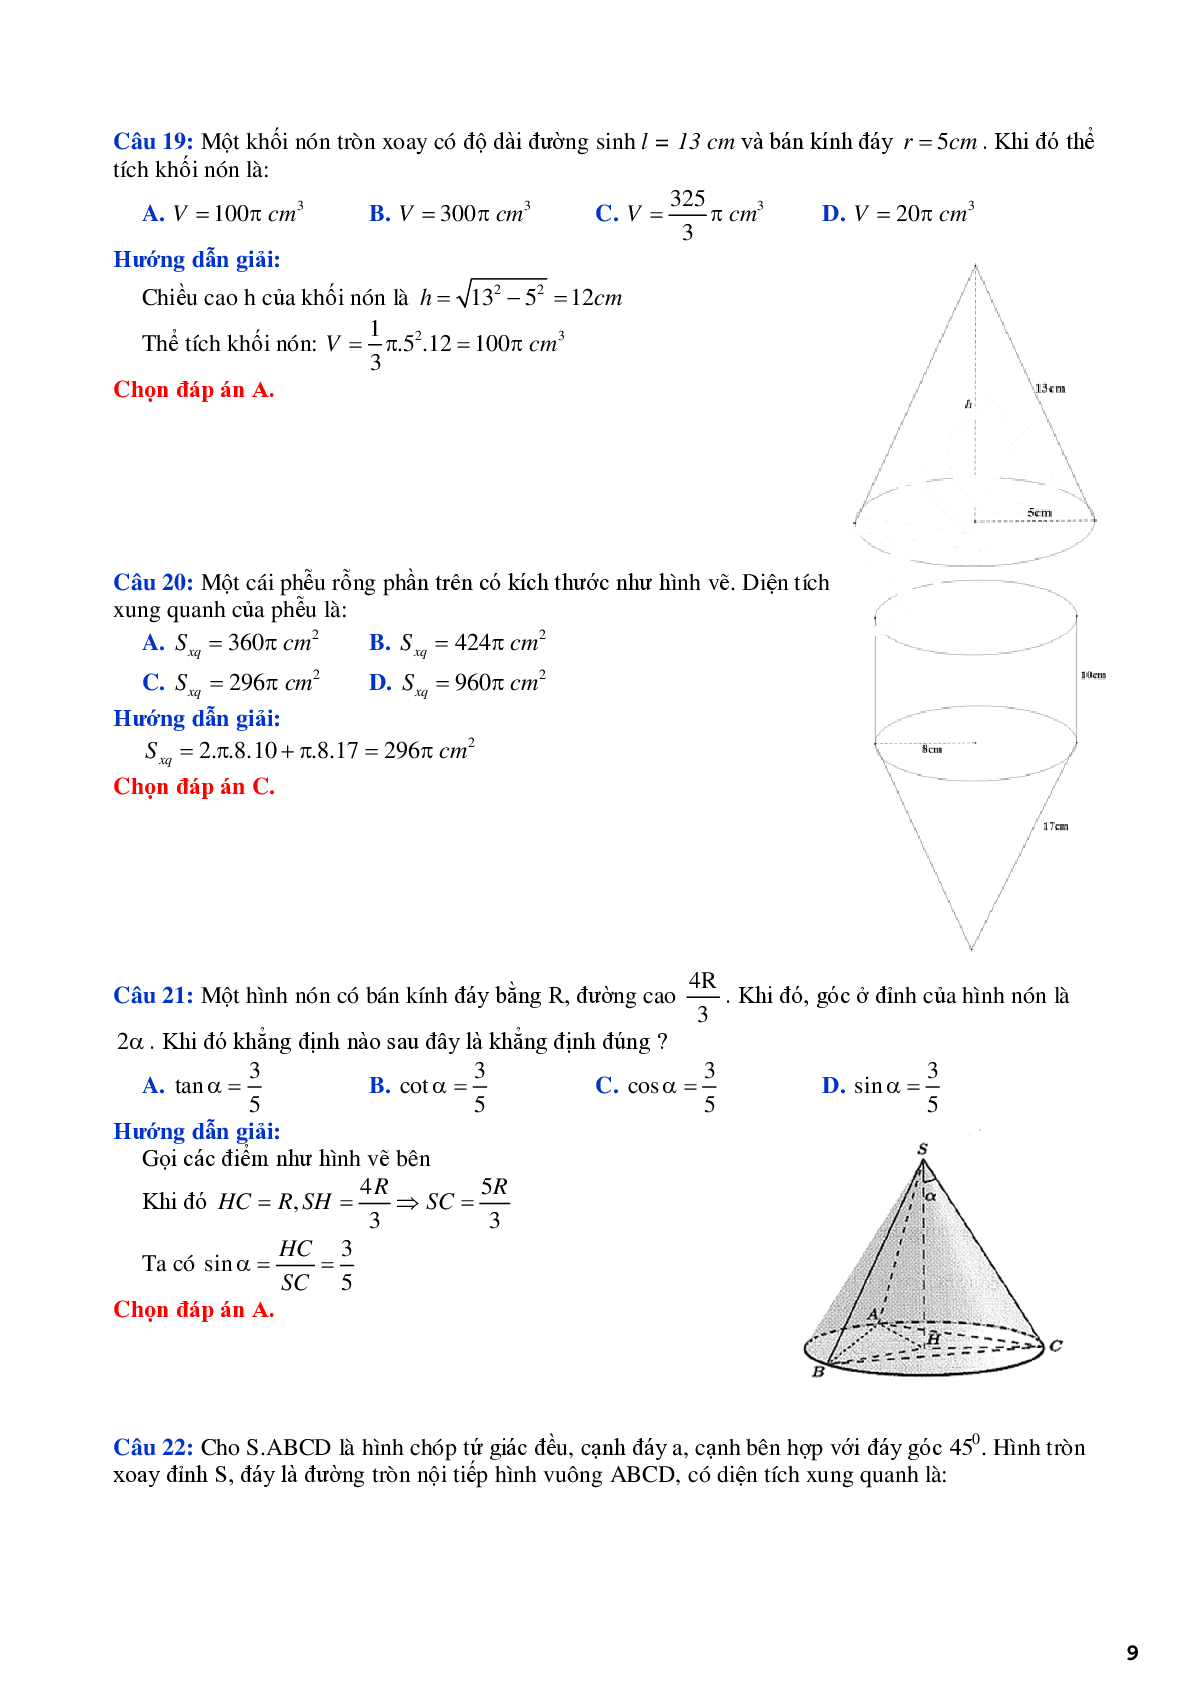 Lý thuyết và bài tập về mặt tròn xoay - mặt nón trụ cầu - có đáp án chi tiết (trang 9)